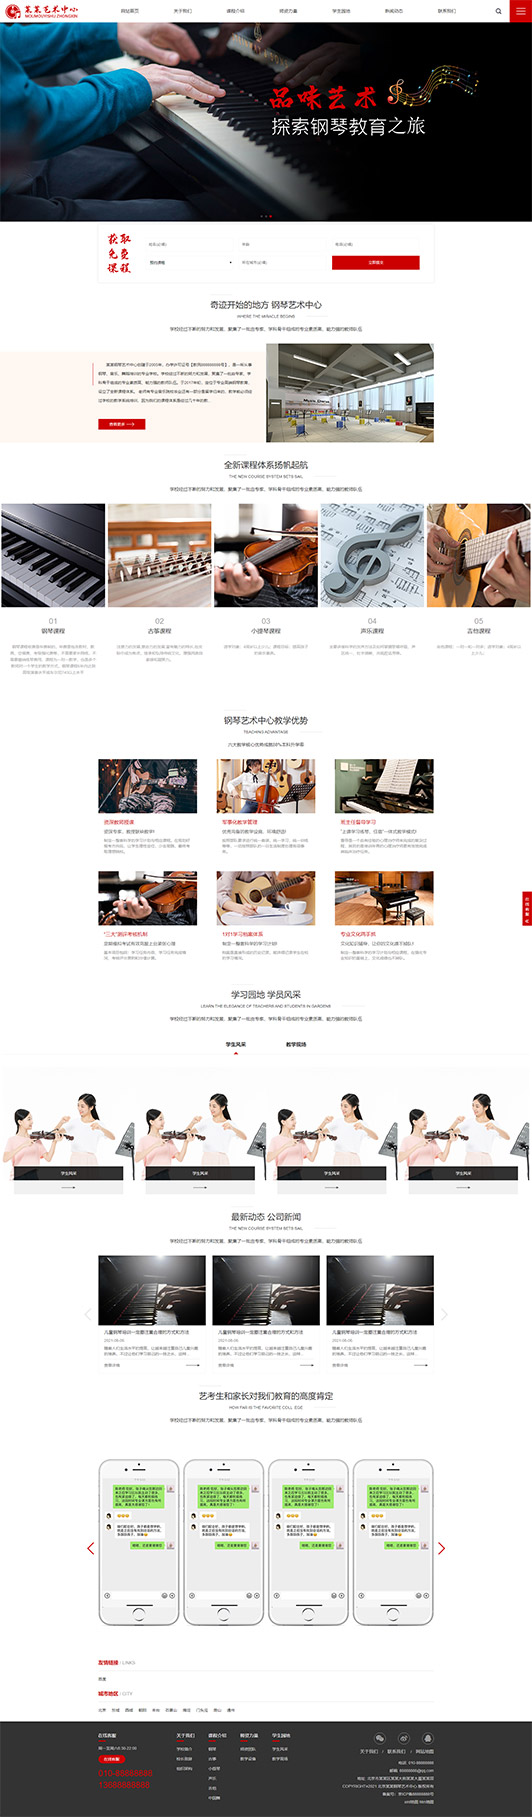 白山钢琴艺术培训公司响应式企业网站